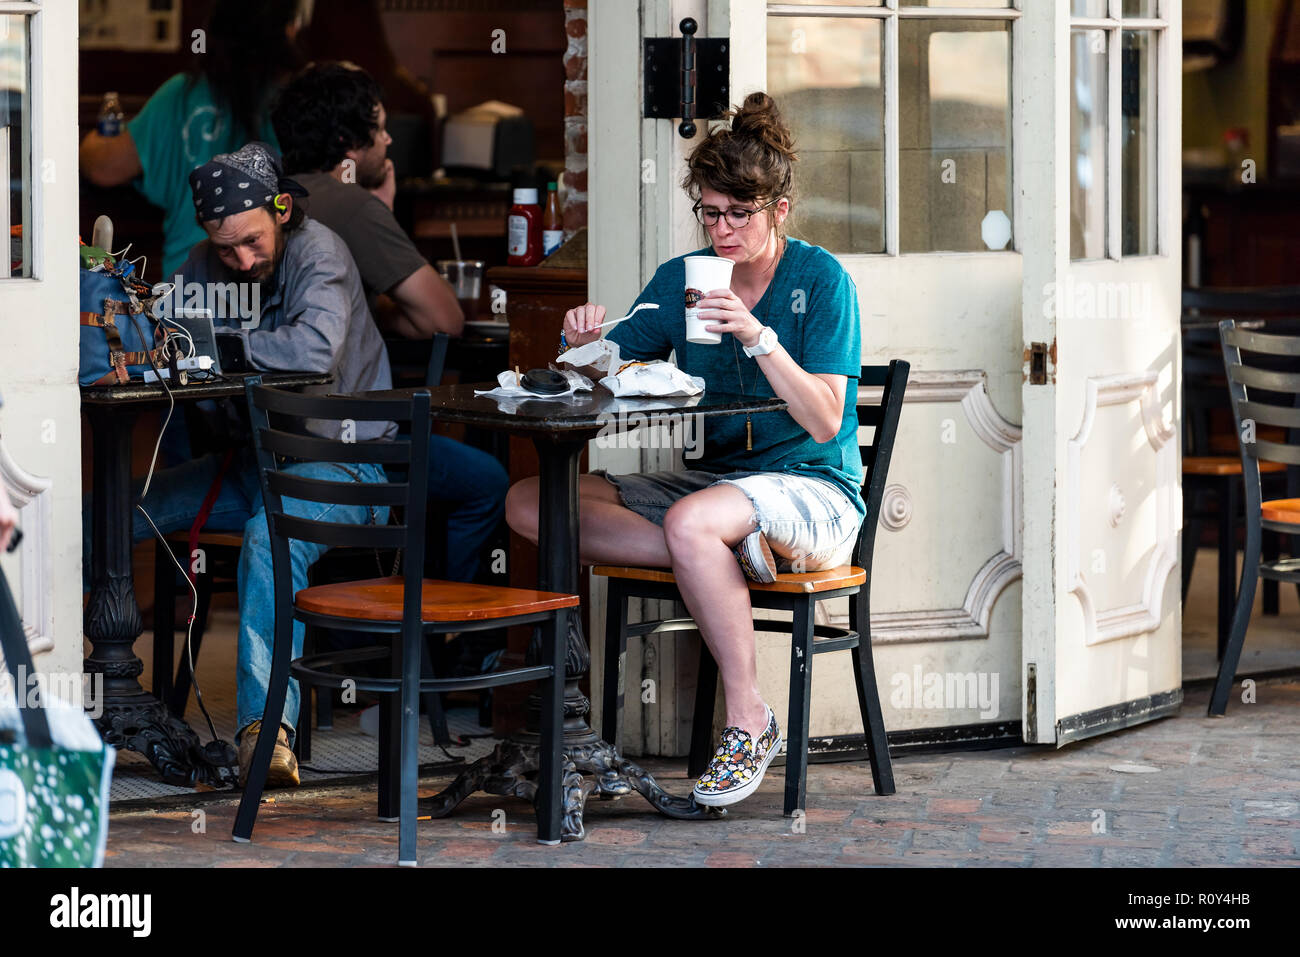 New Orleans, USA - 22 Avril 2018 : dans la région de Decatur Street Louisiane célèbre ville, ville, en soirée, woman drinking coffee at cafe envie, s'asseoir en piscine Banque D'Images